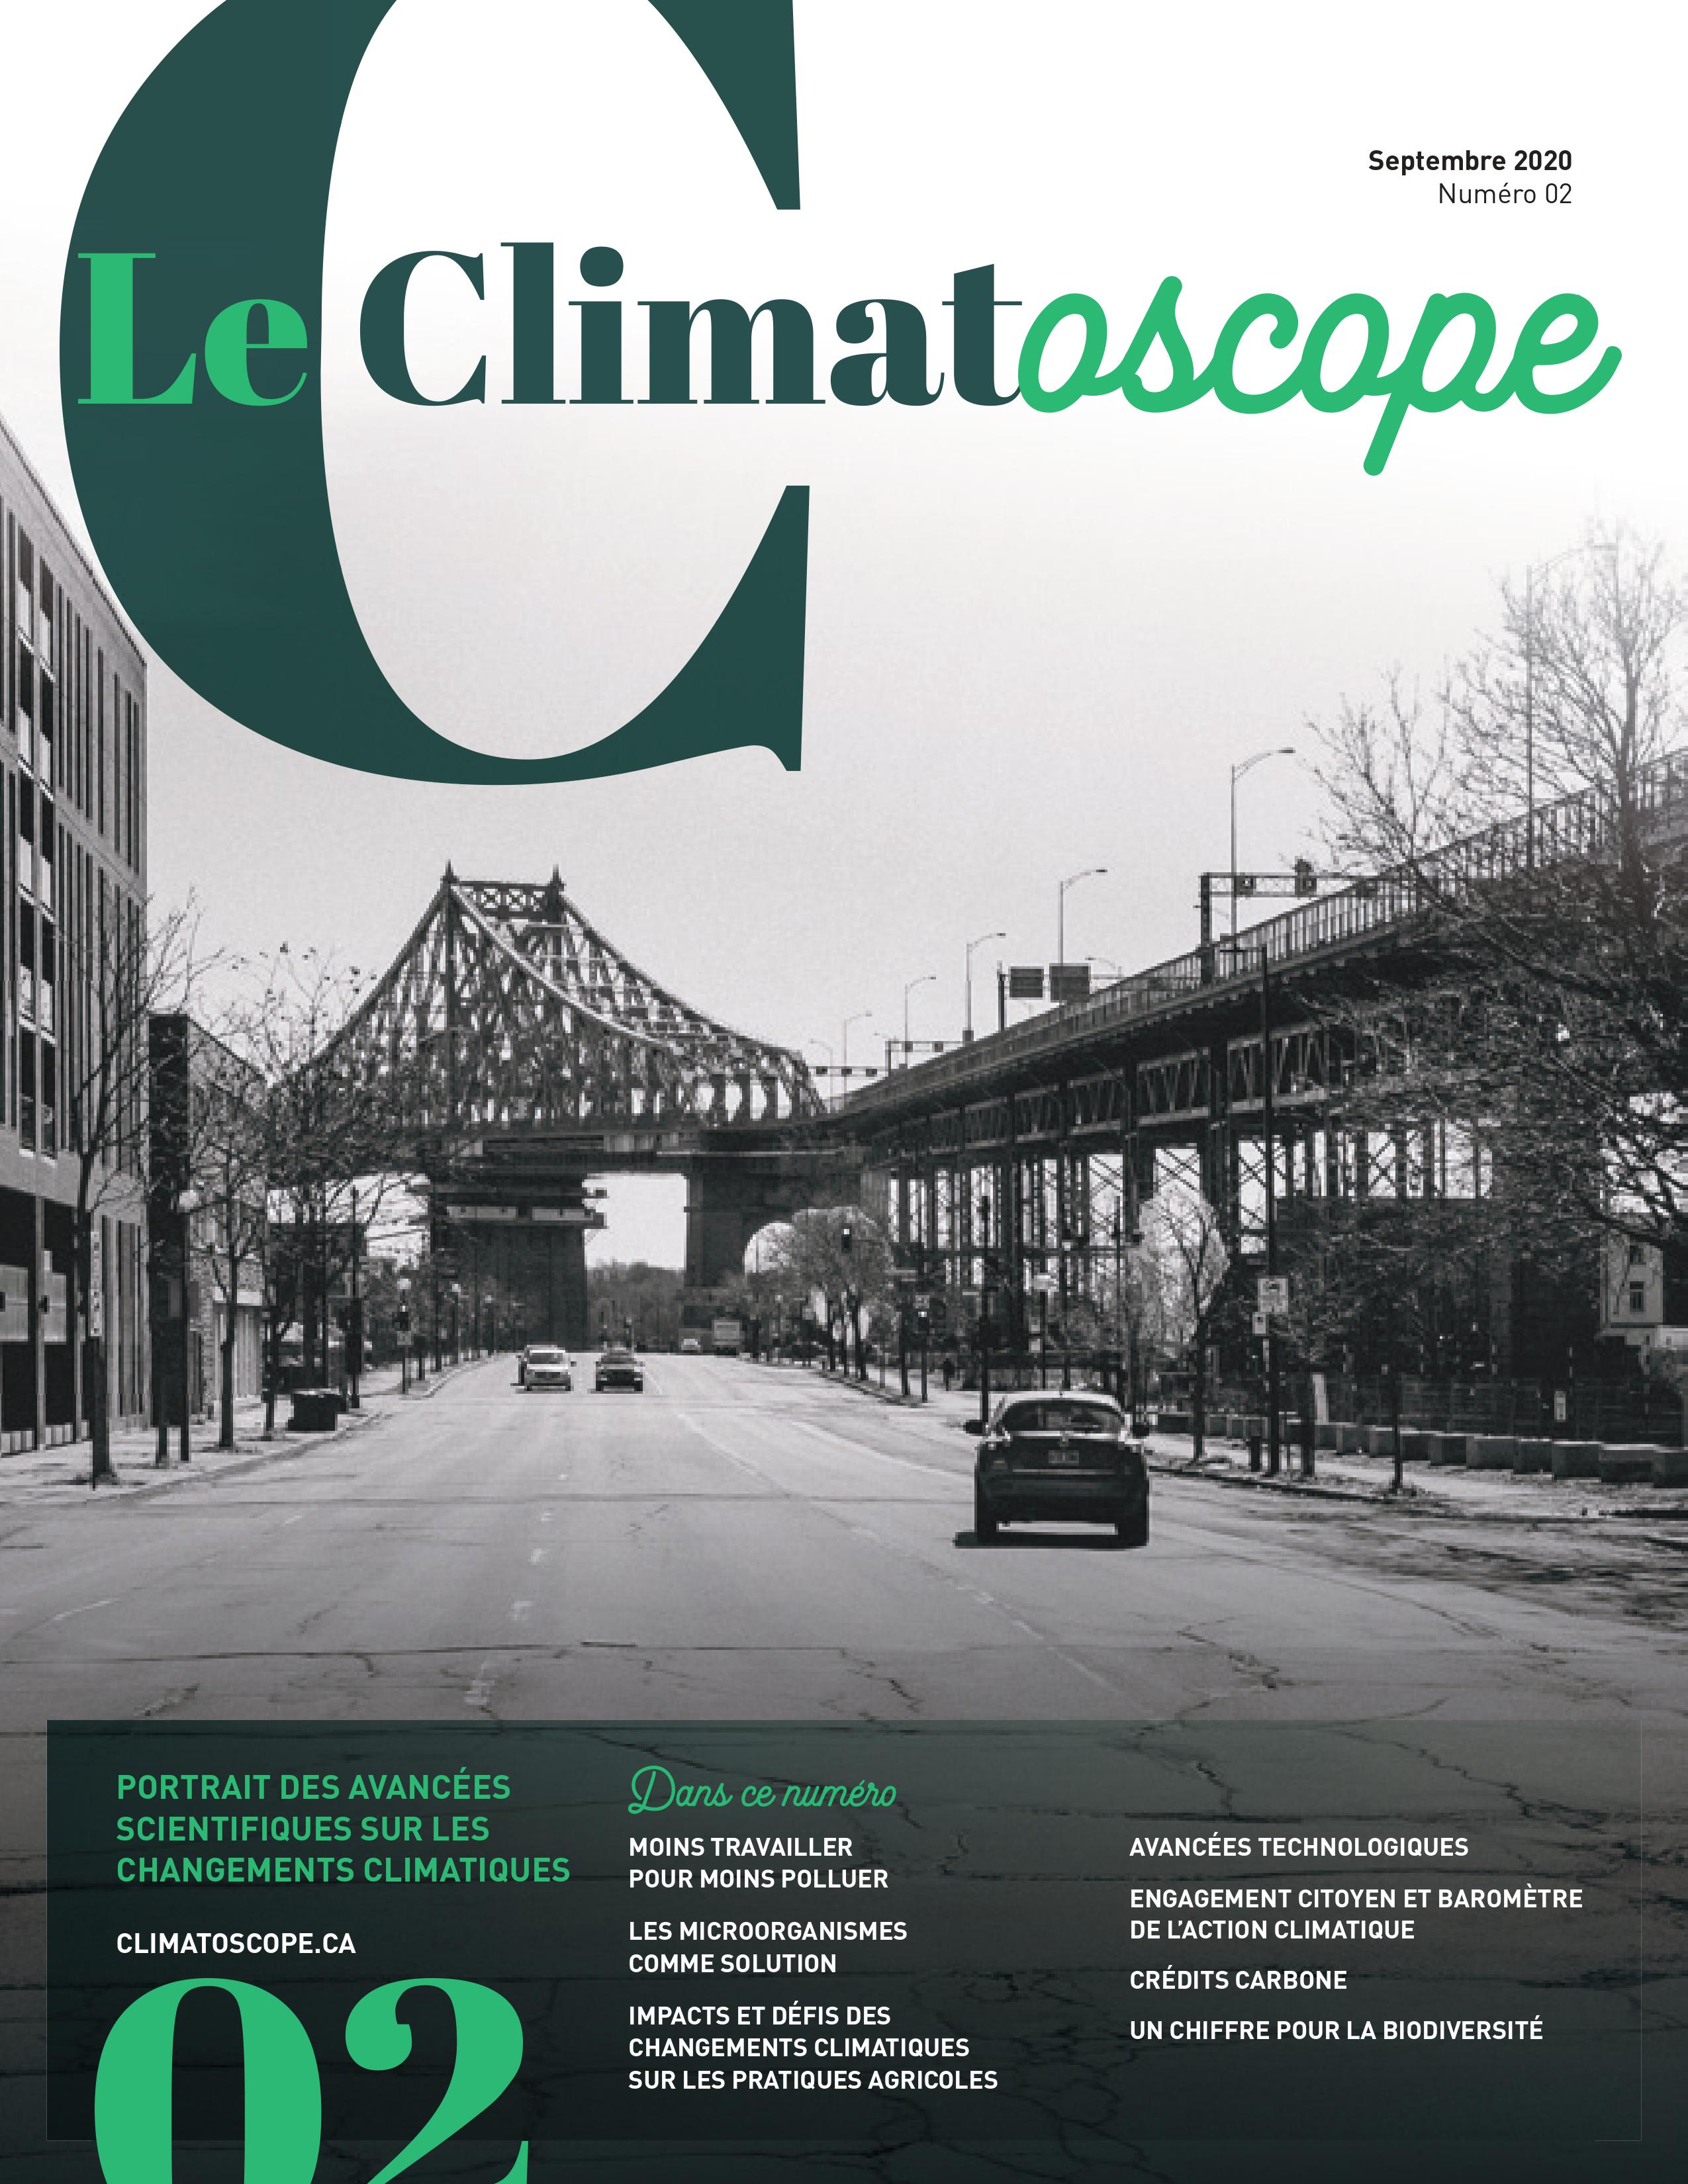 La population québécoise est-elle disposée à s’engager pour le climat? Premier Baromètre de l’action climatique au Québec